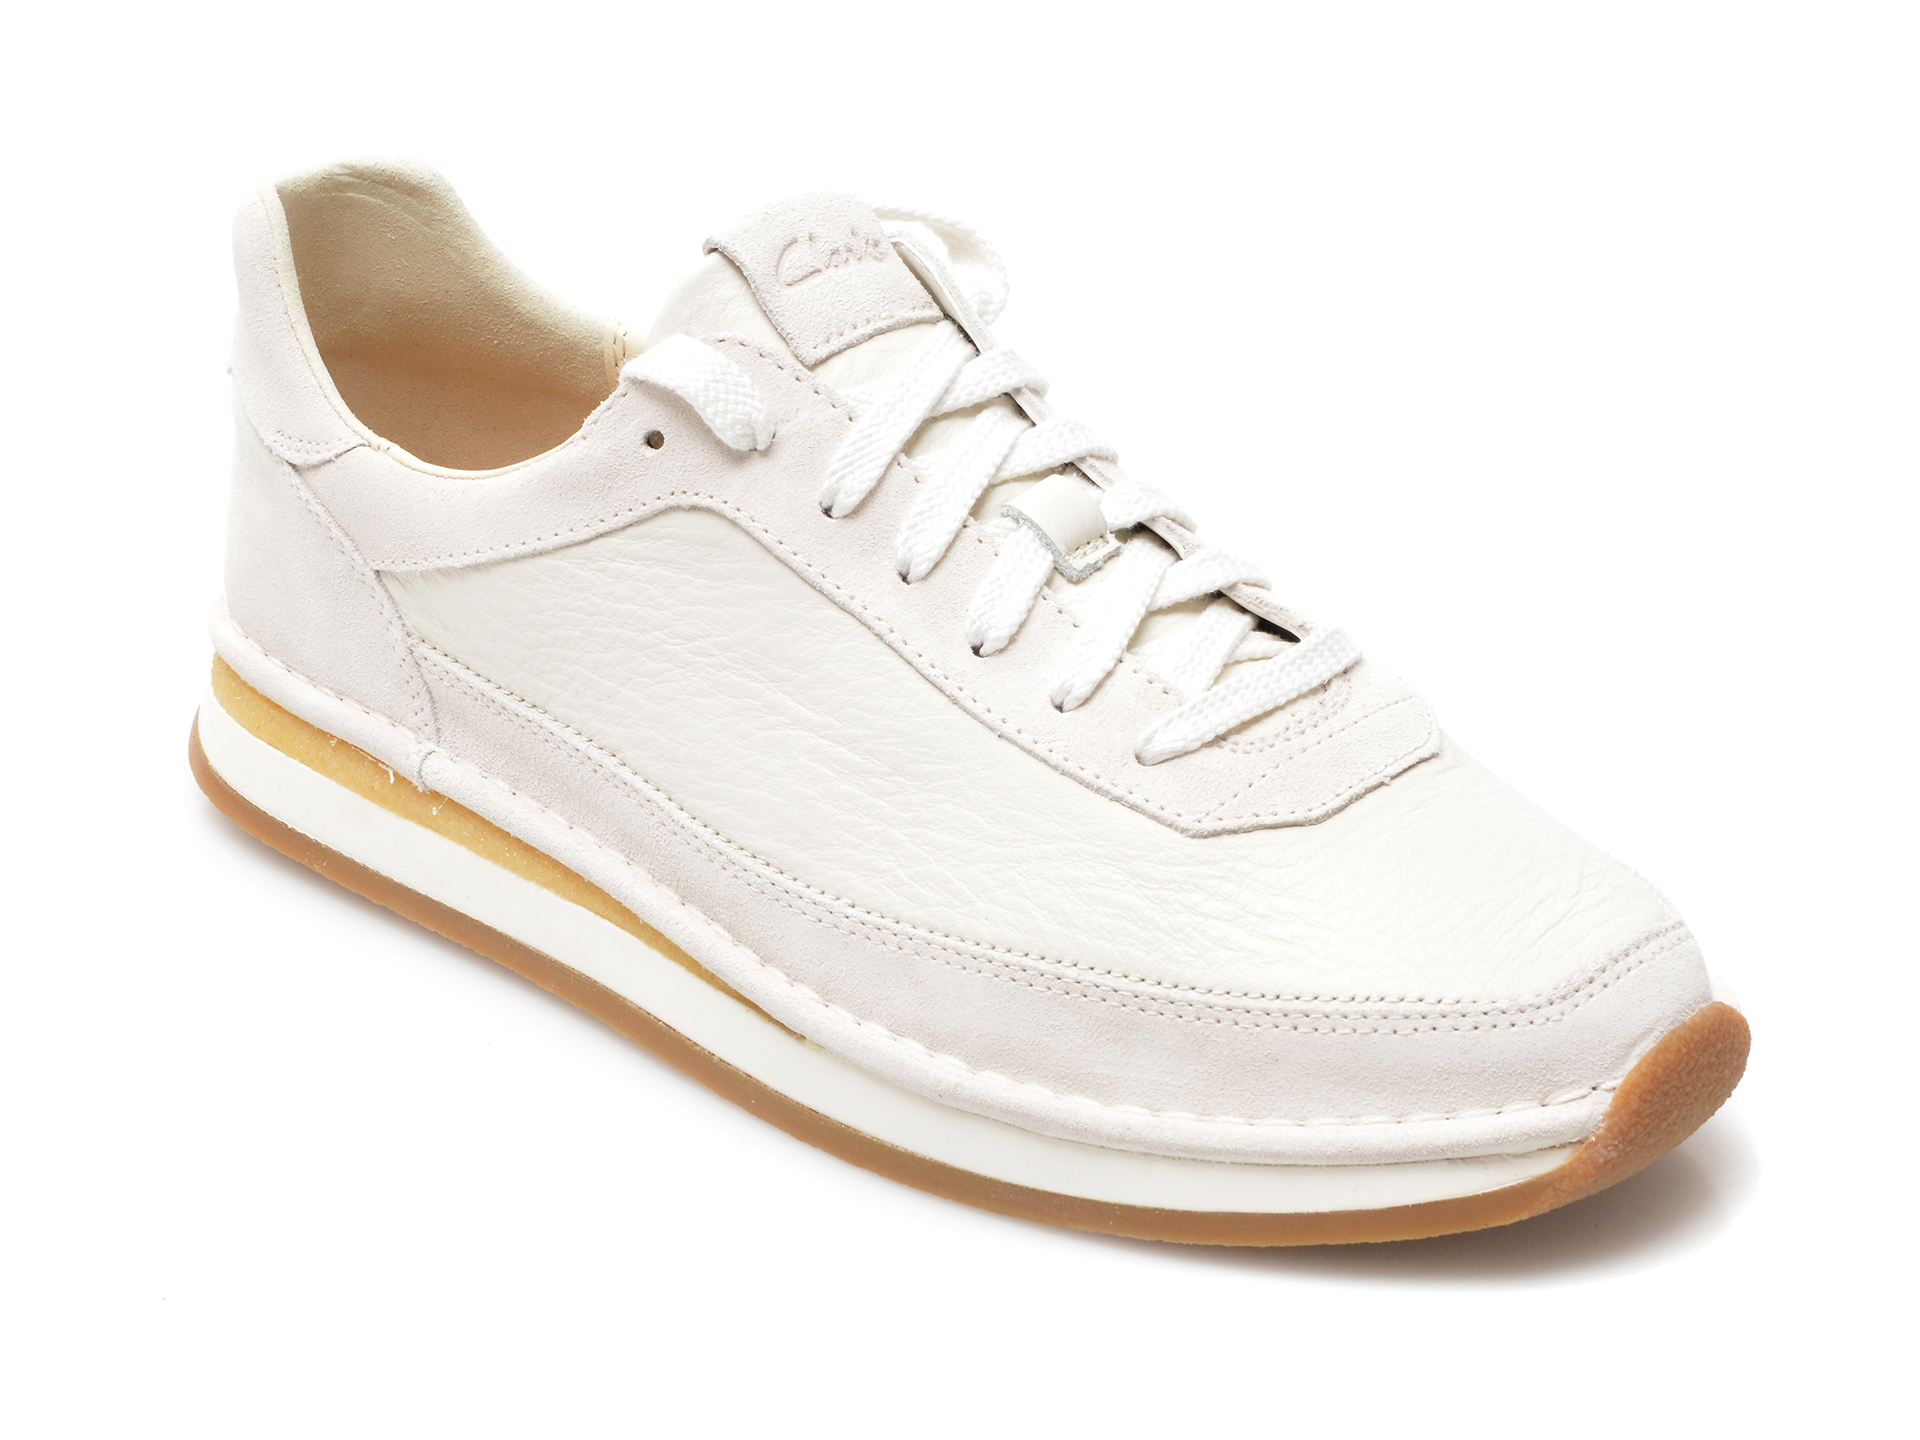 Pantofi sport CLARKS albi, CRARULA, din piele naturala Clarks imagine noua